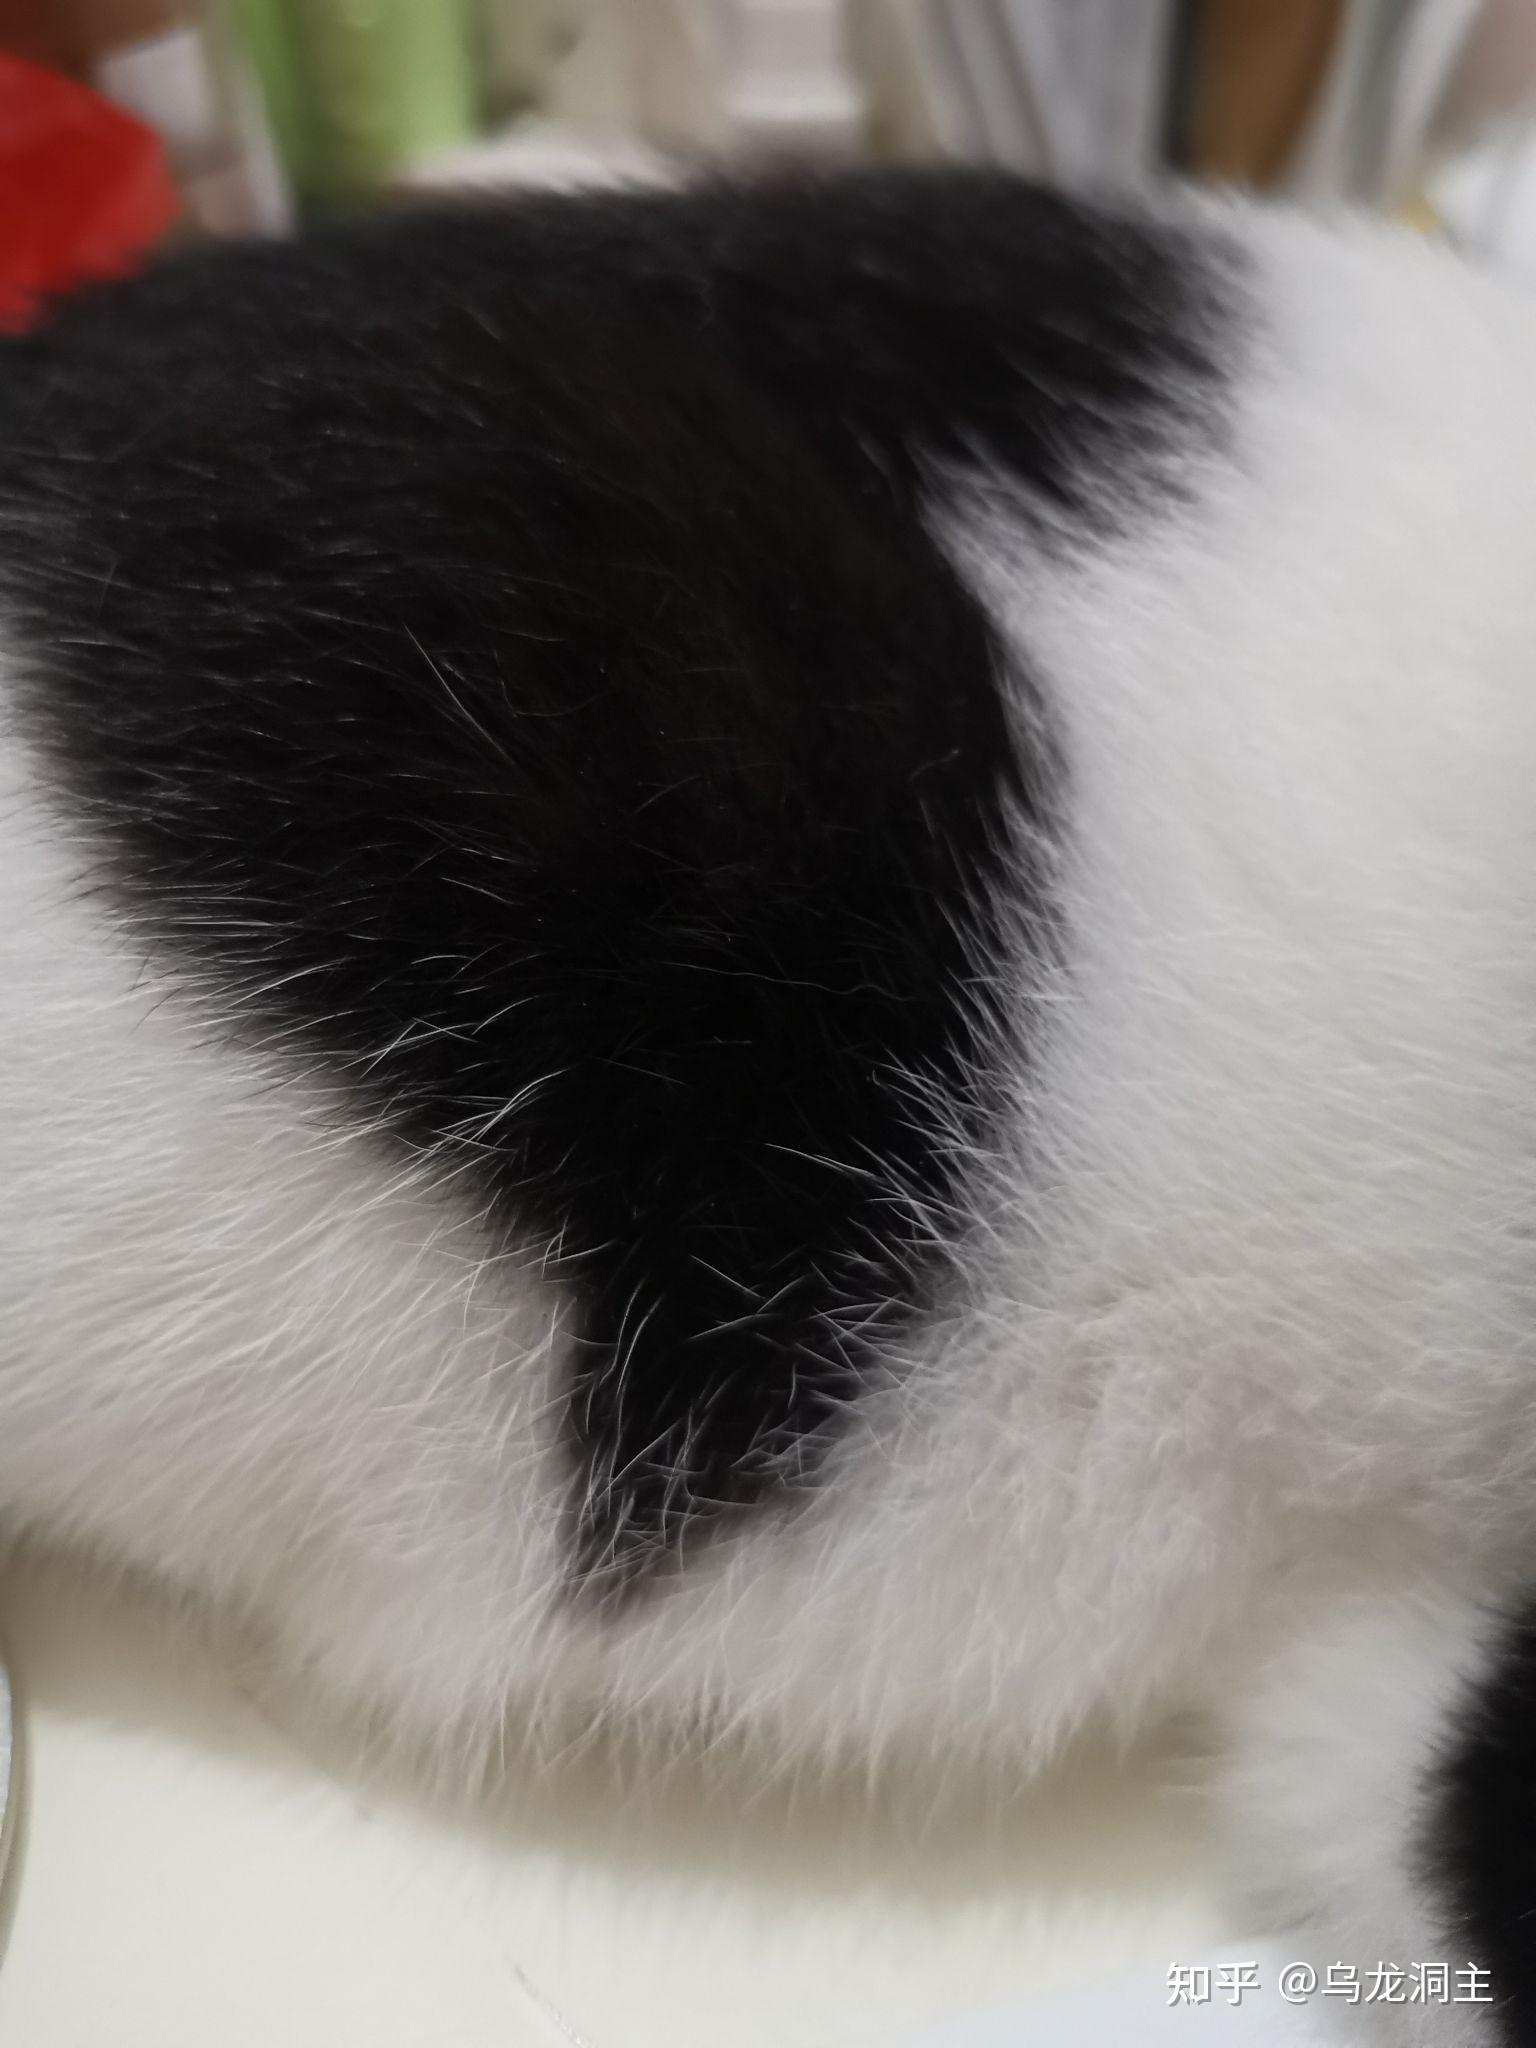 为什么奶牛猫白毛里有黑色杂毛,黑毛里没有白色杂毛?